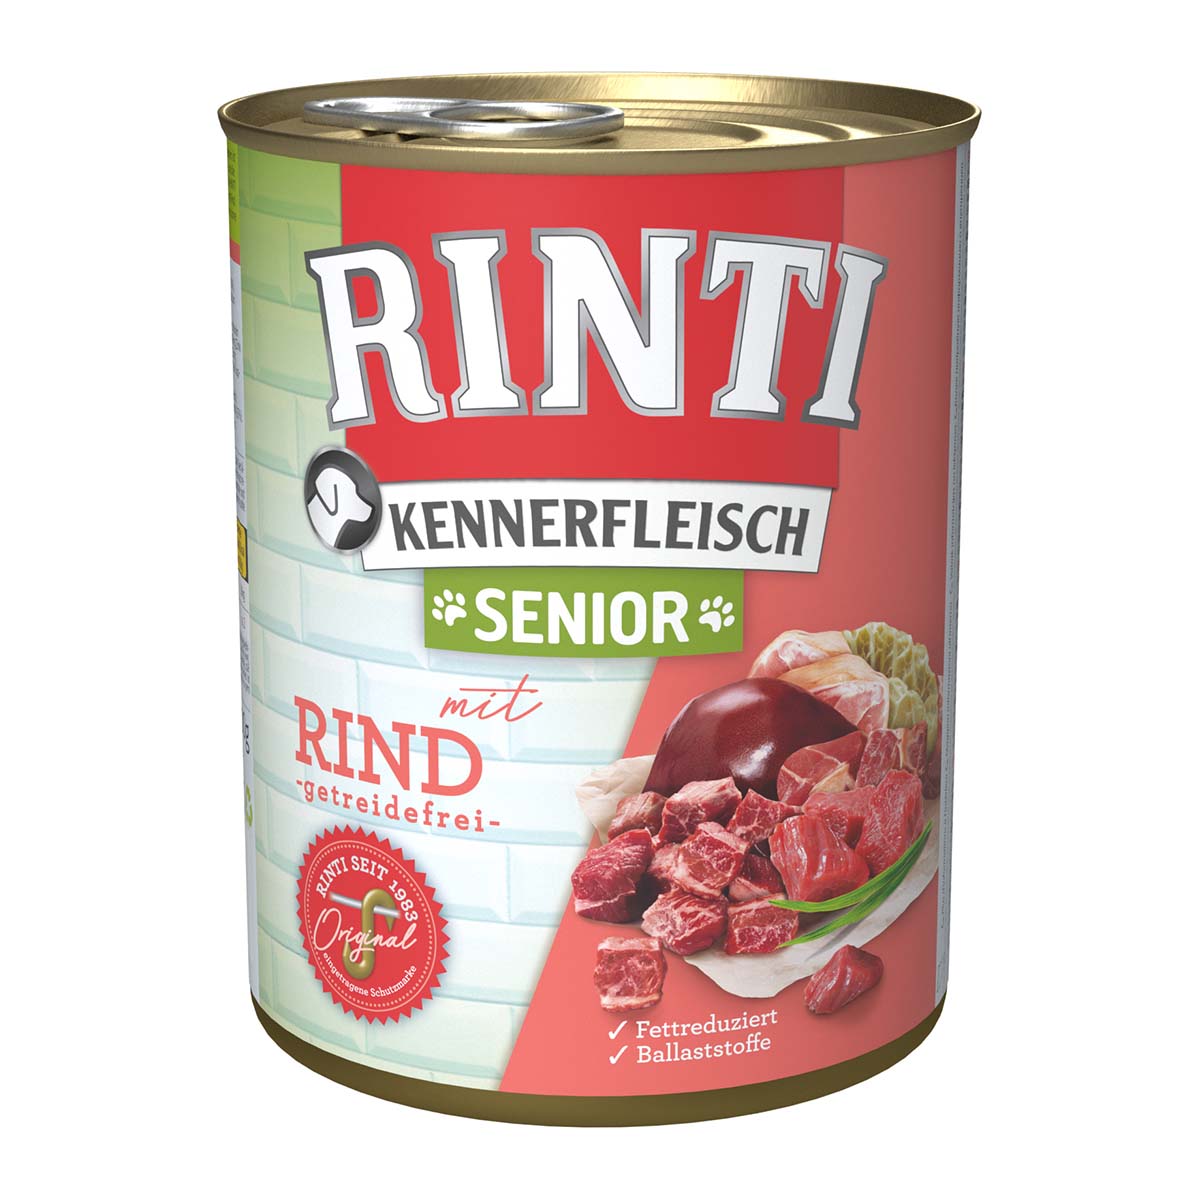 Rinti Kennerfleisch Senior mit Rind 12x800g